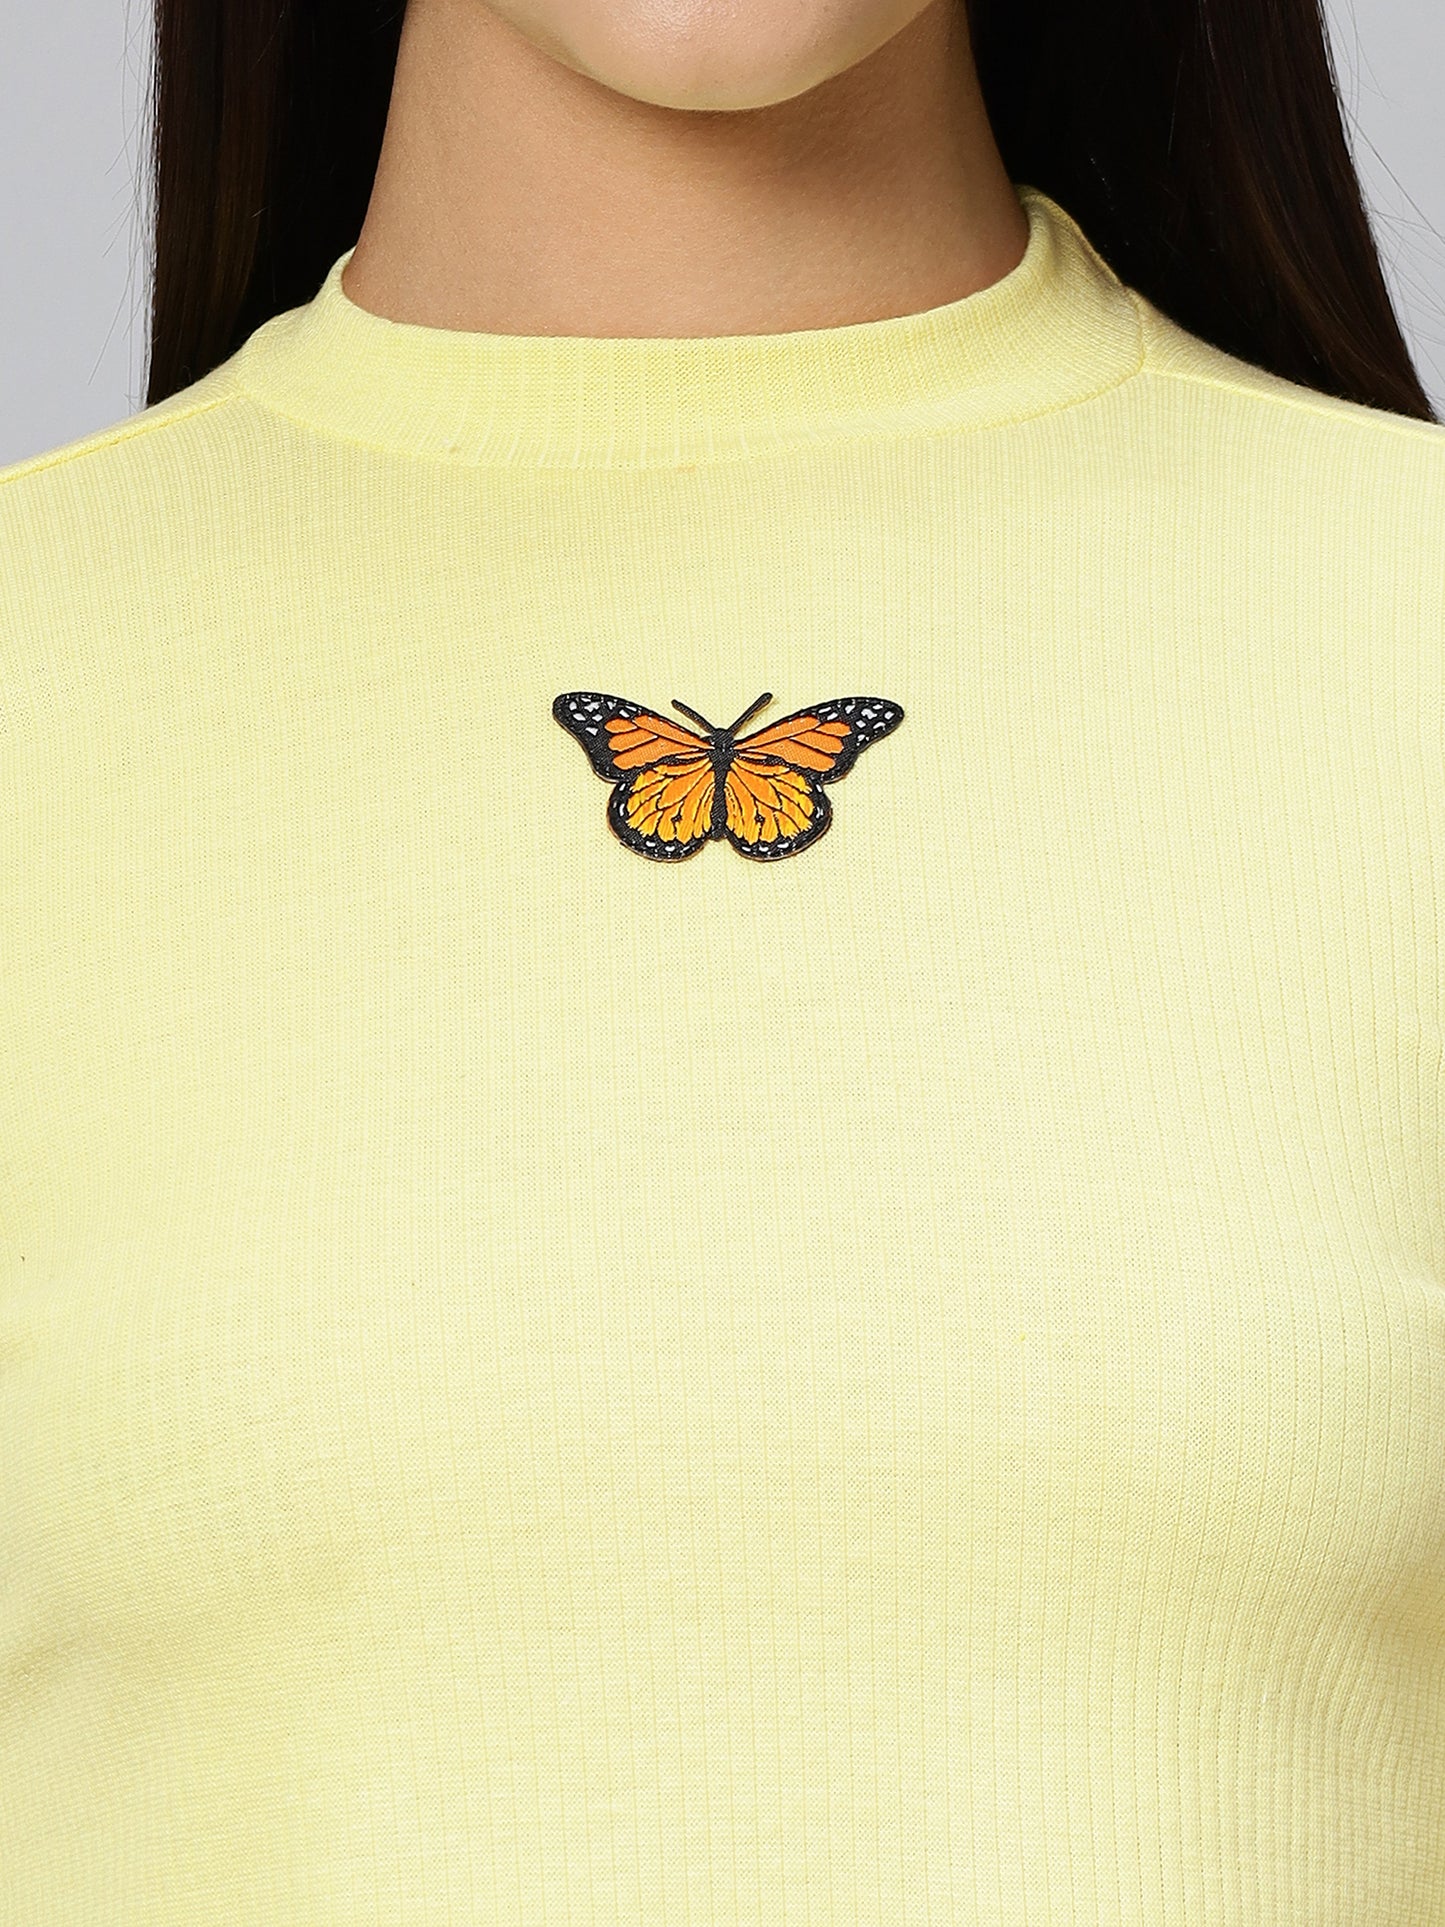 Light Yellow Butterfly Crop Top